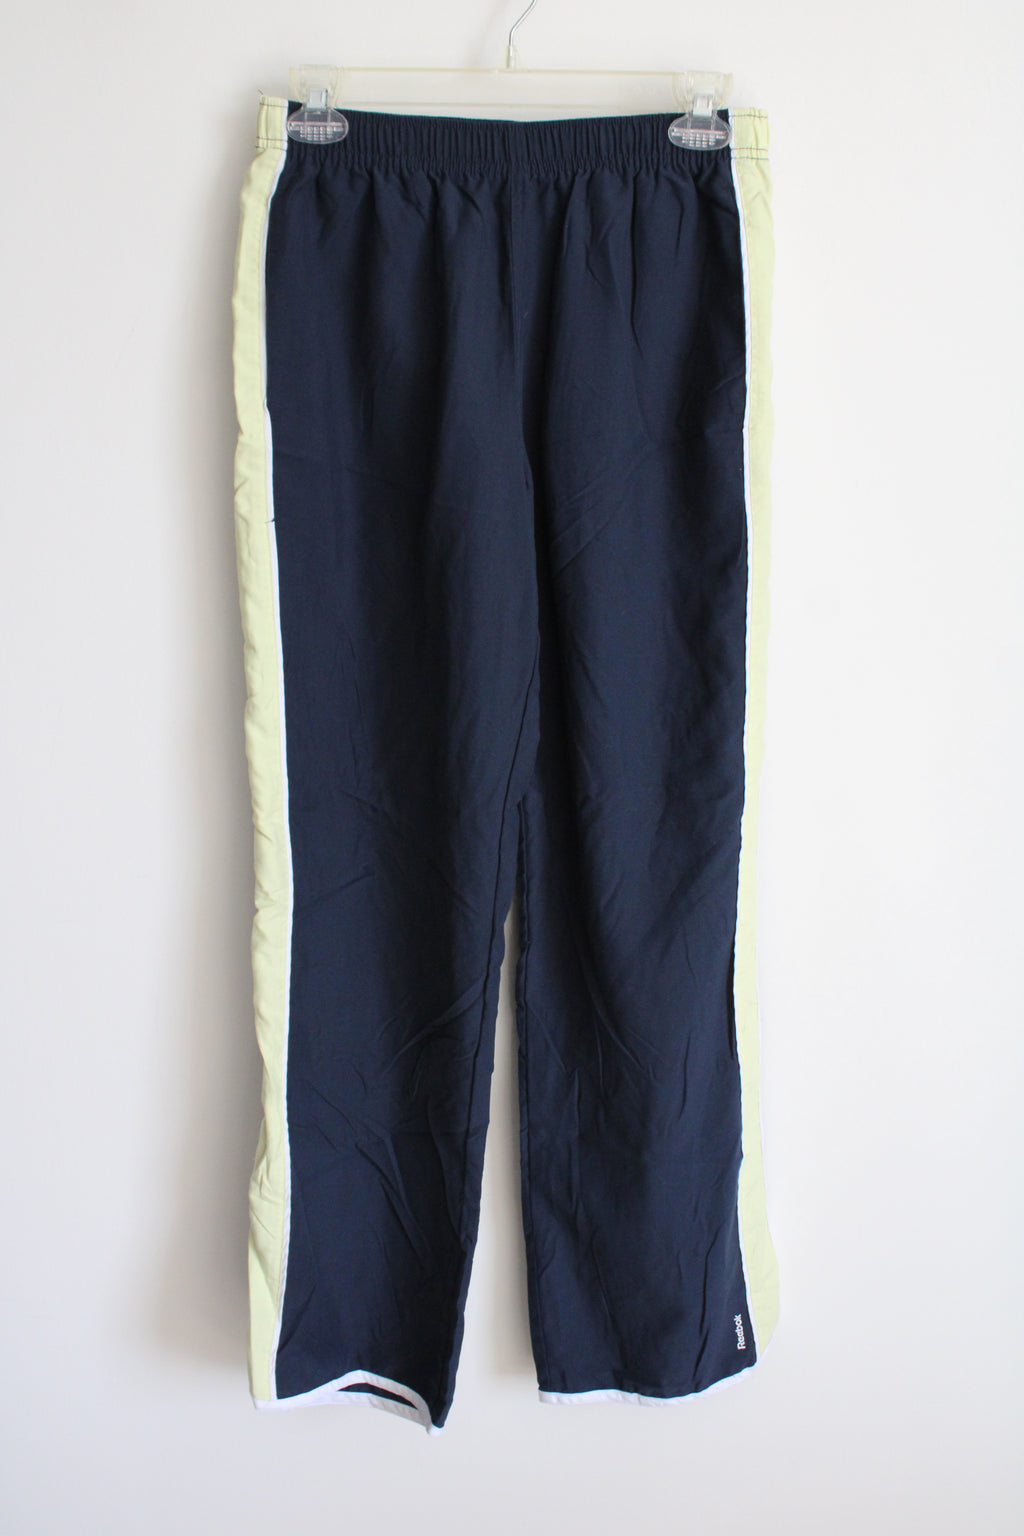 Reebok Navy Blue Green Stripe Pant | M